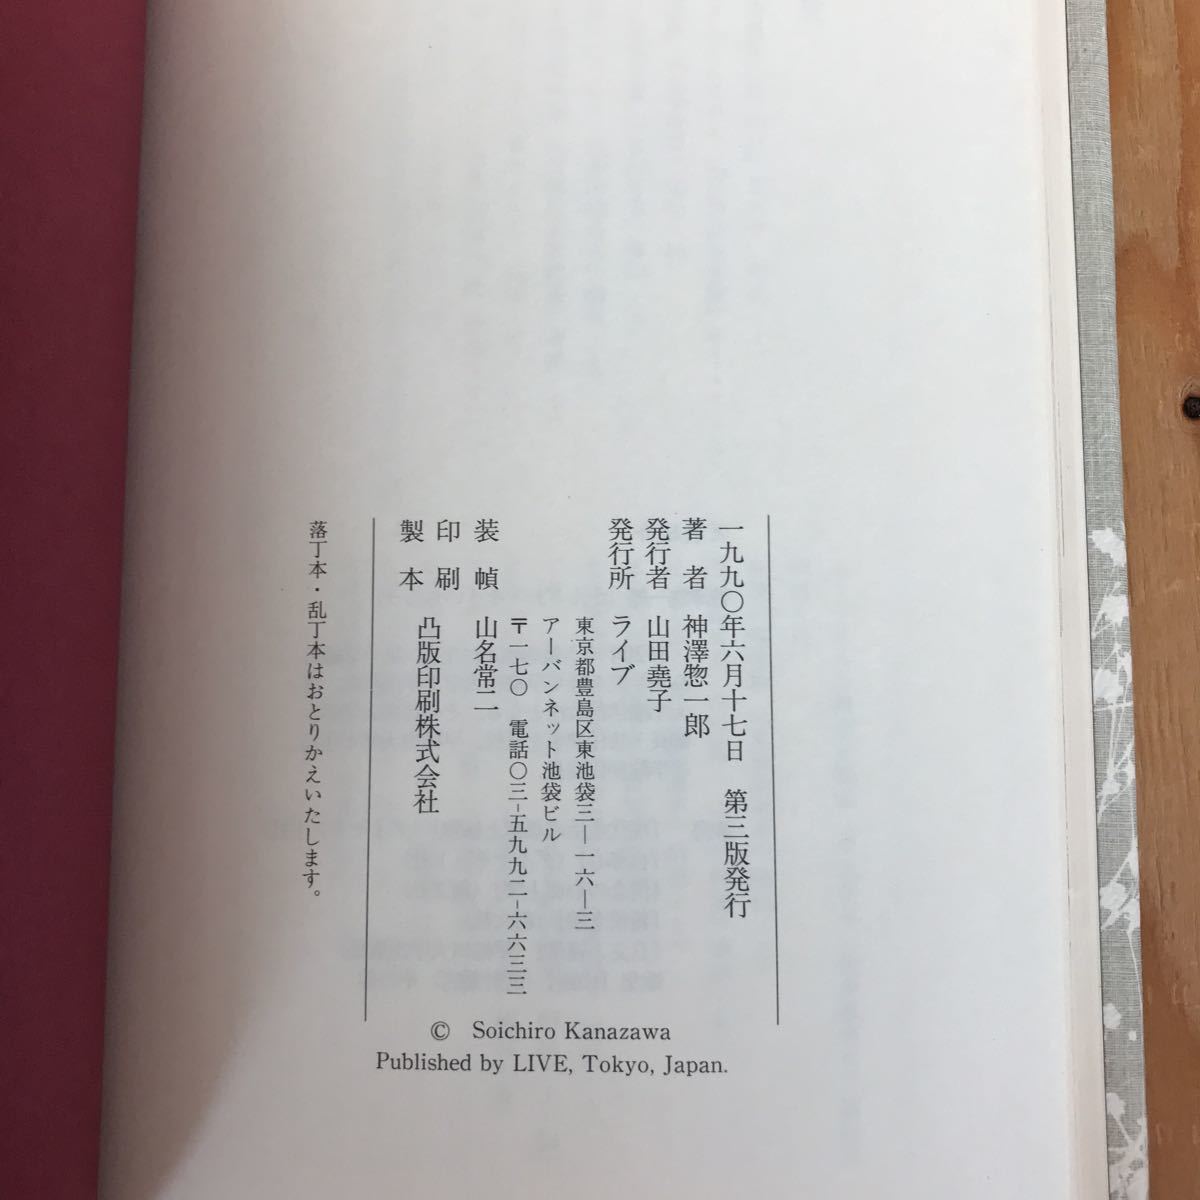 あD-18912レア◎◎[幸福論の基礎] 神澤惣一郎 著 1990年発行 孔子と孟子_画像5